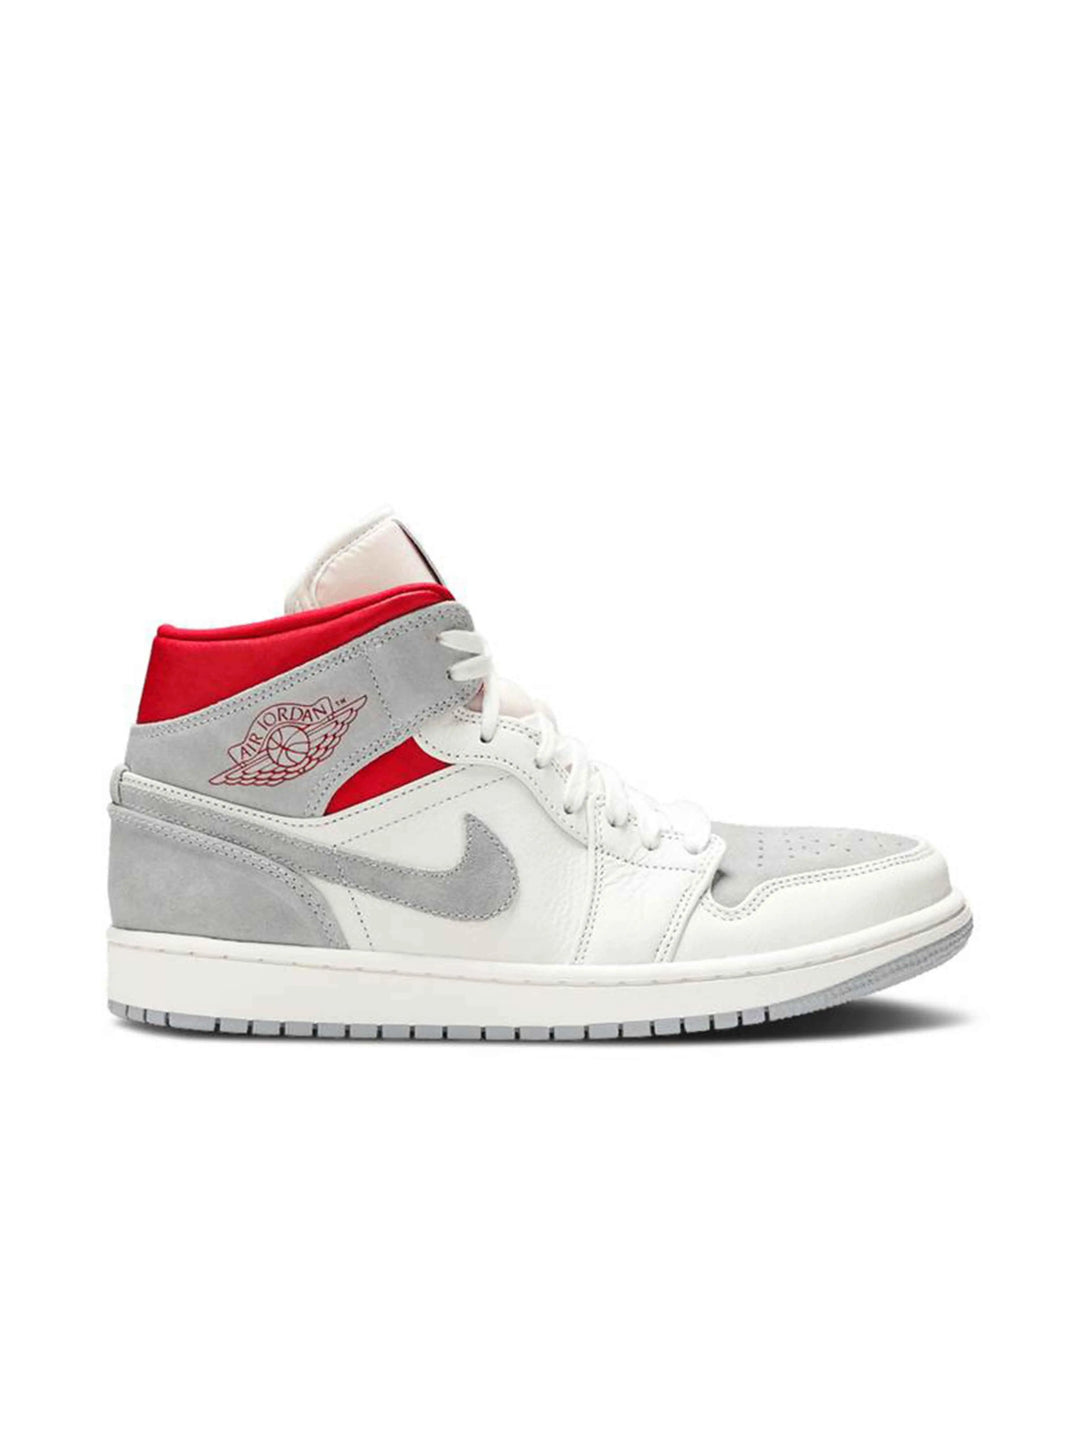 Nike Air Jordan 1 Mid SneakersNStuff 'Past, Present, Future' Prior